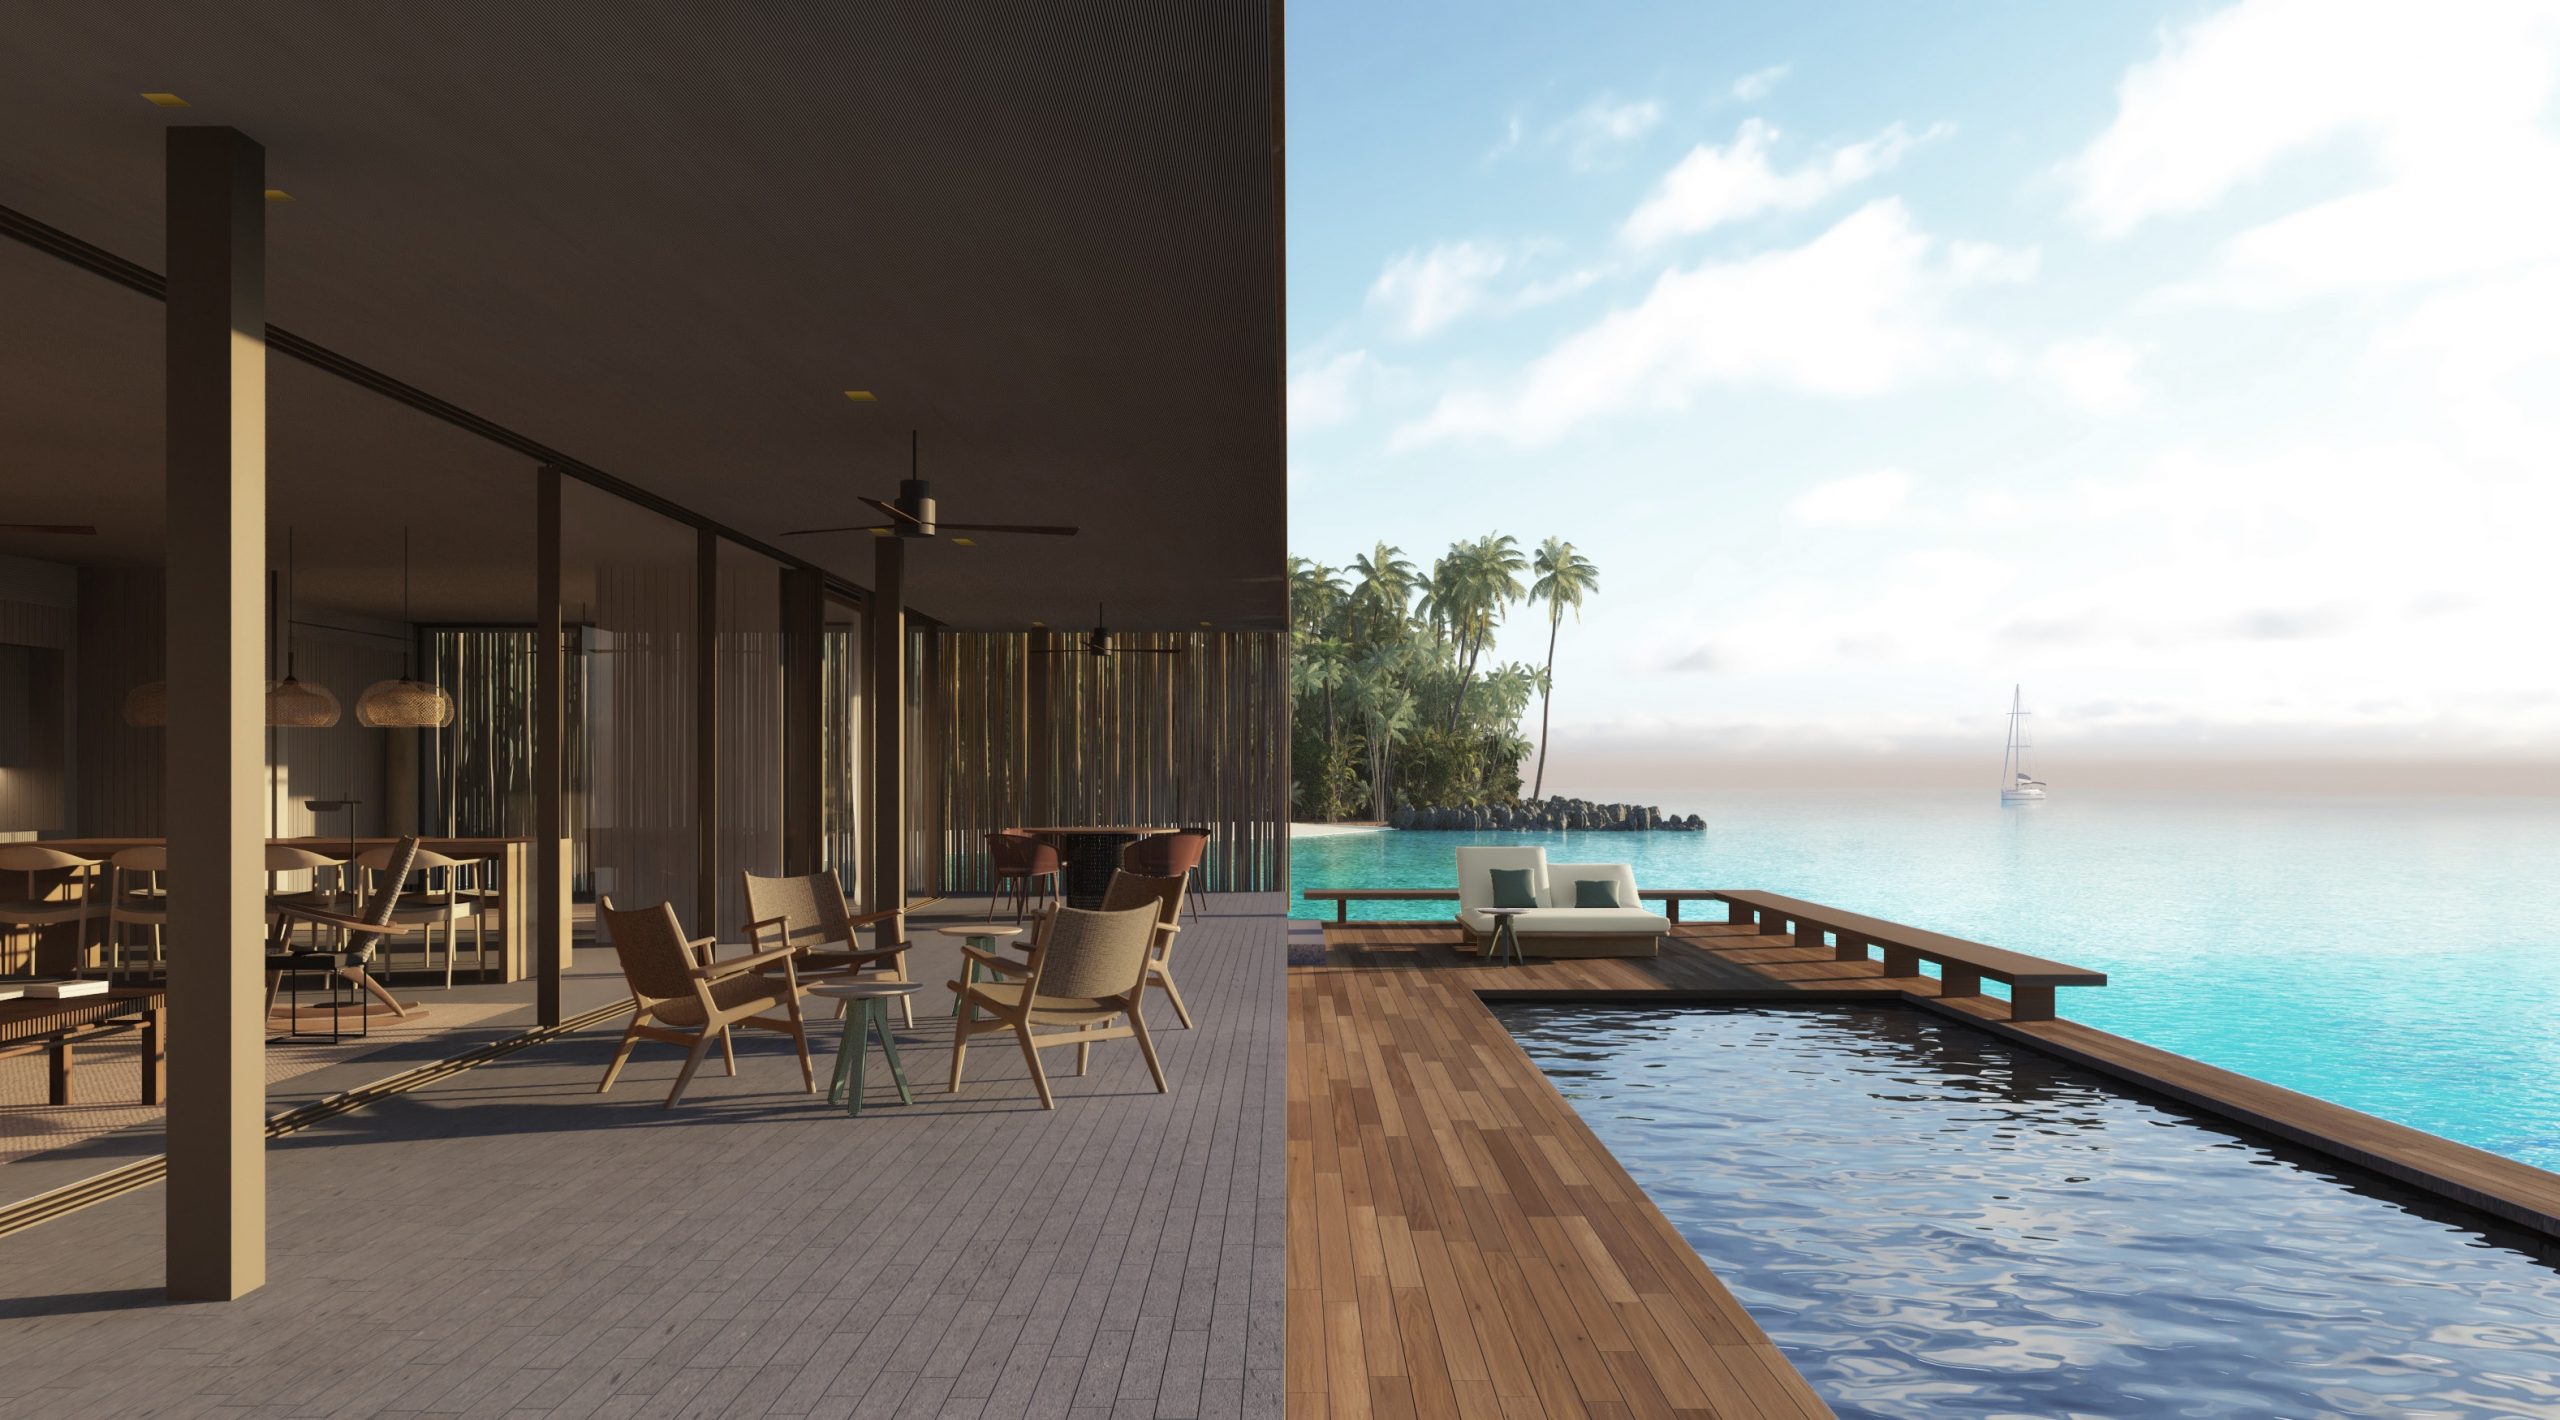 Patina Maldives, Fari Islands: Das visionäre Design des Architekten Marcio Kogan verbindet Mensch und Natur